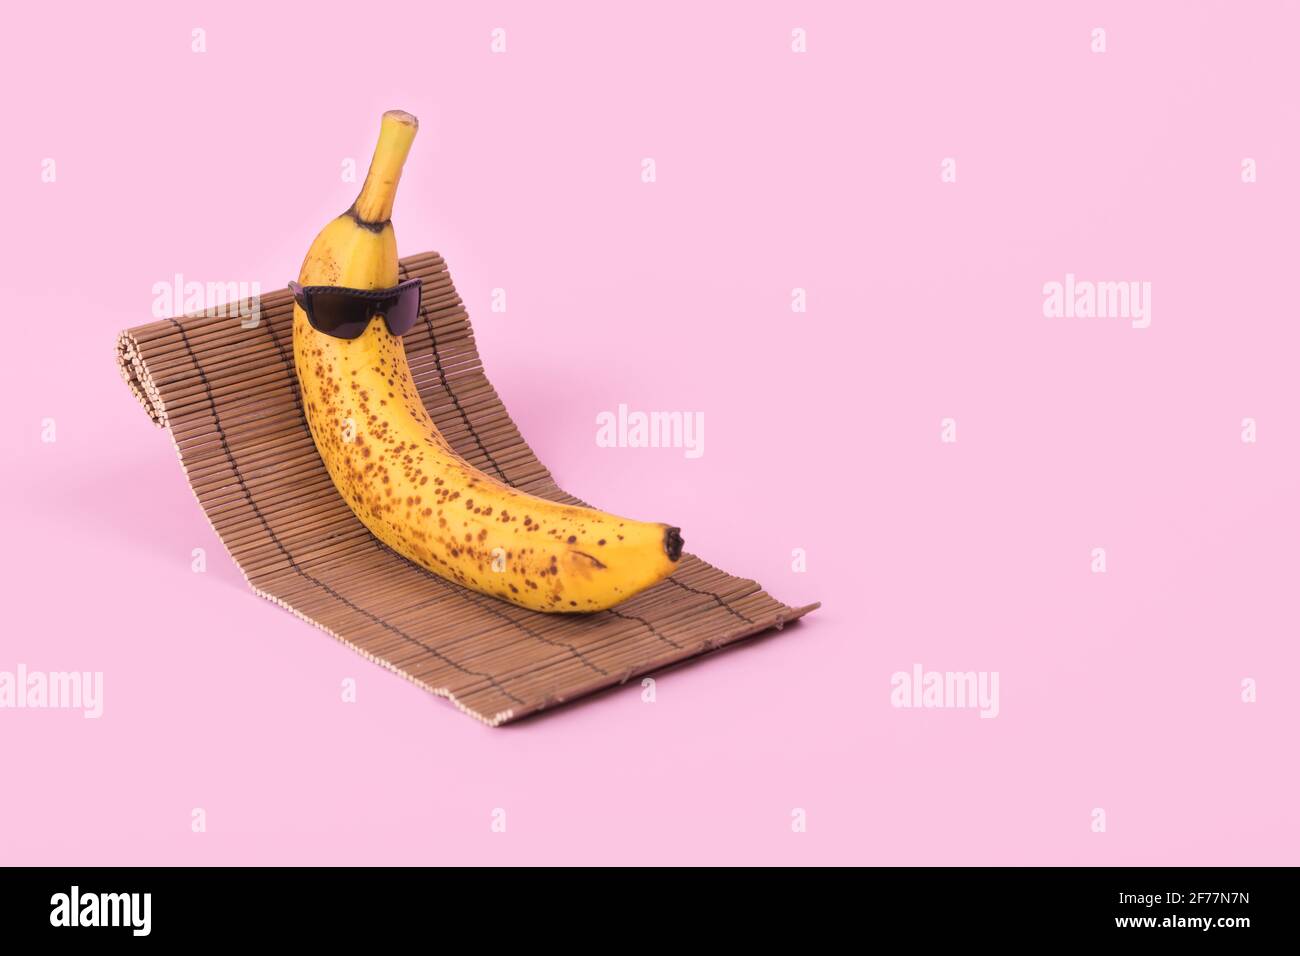 Idée amusante et créative avec une banane dans des lunettes de soleil  couchée sur un lit de soleil sur fond rose pastel. Concept de voyage  minimal, fruits tropicaux élégants l'été. S Photo